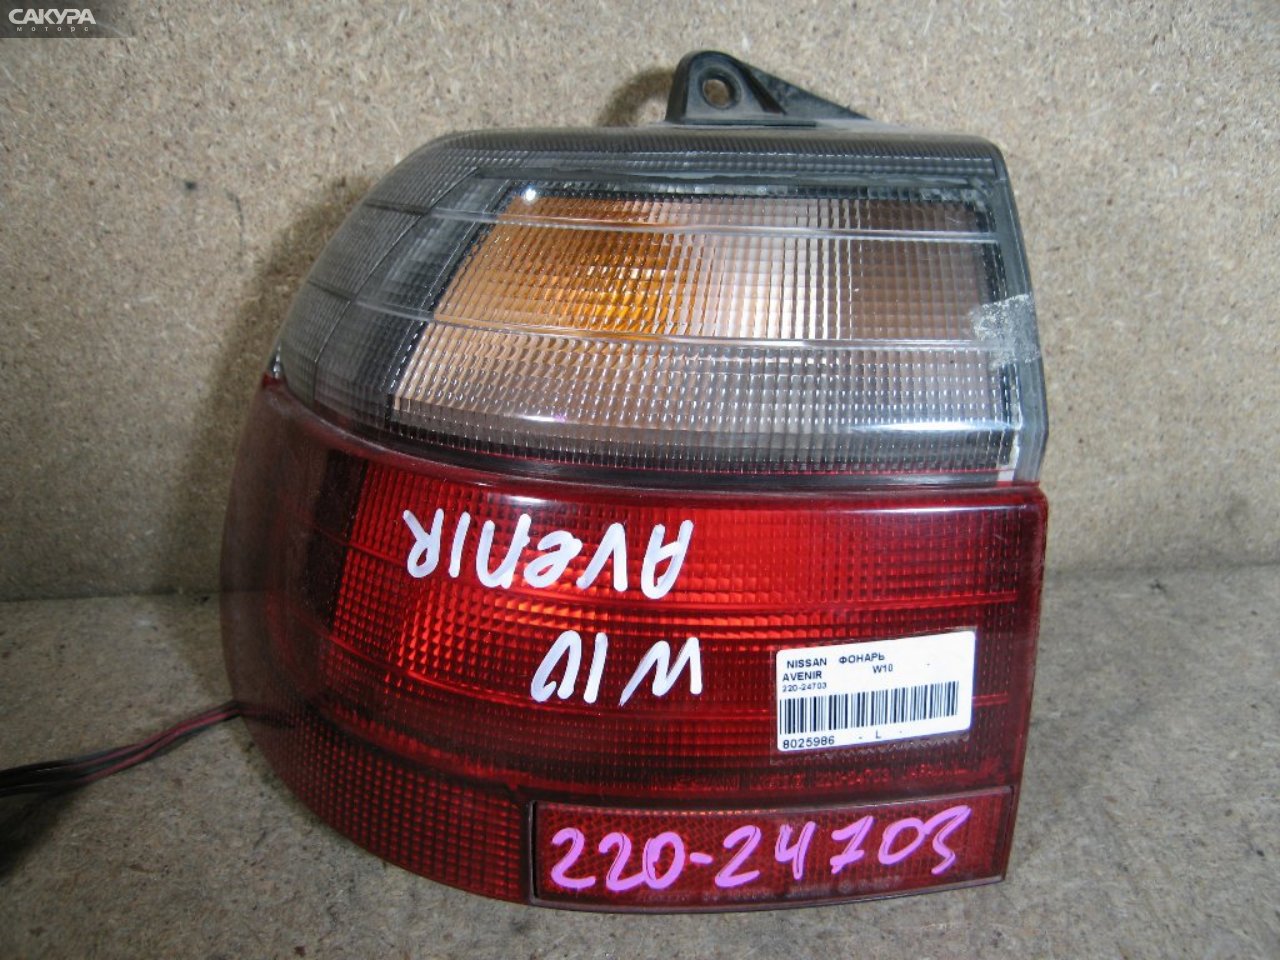 Фонарь стоп-сигнала левый Nissan Avenir W10 220-24703: купить в Сакура Абакан.